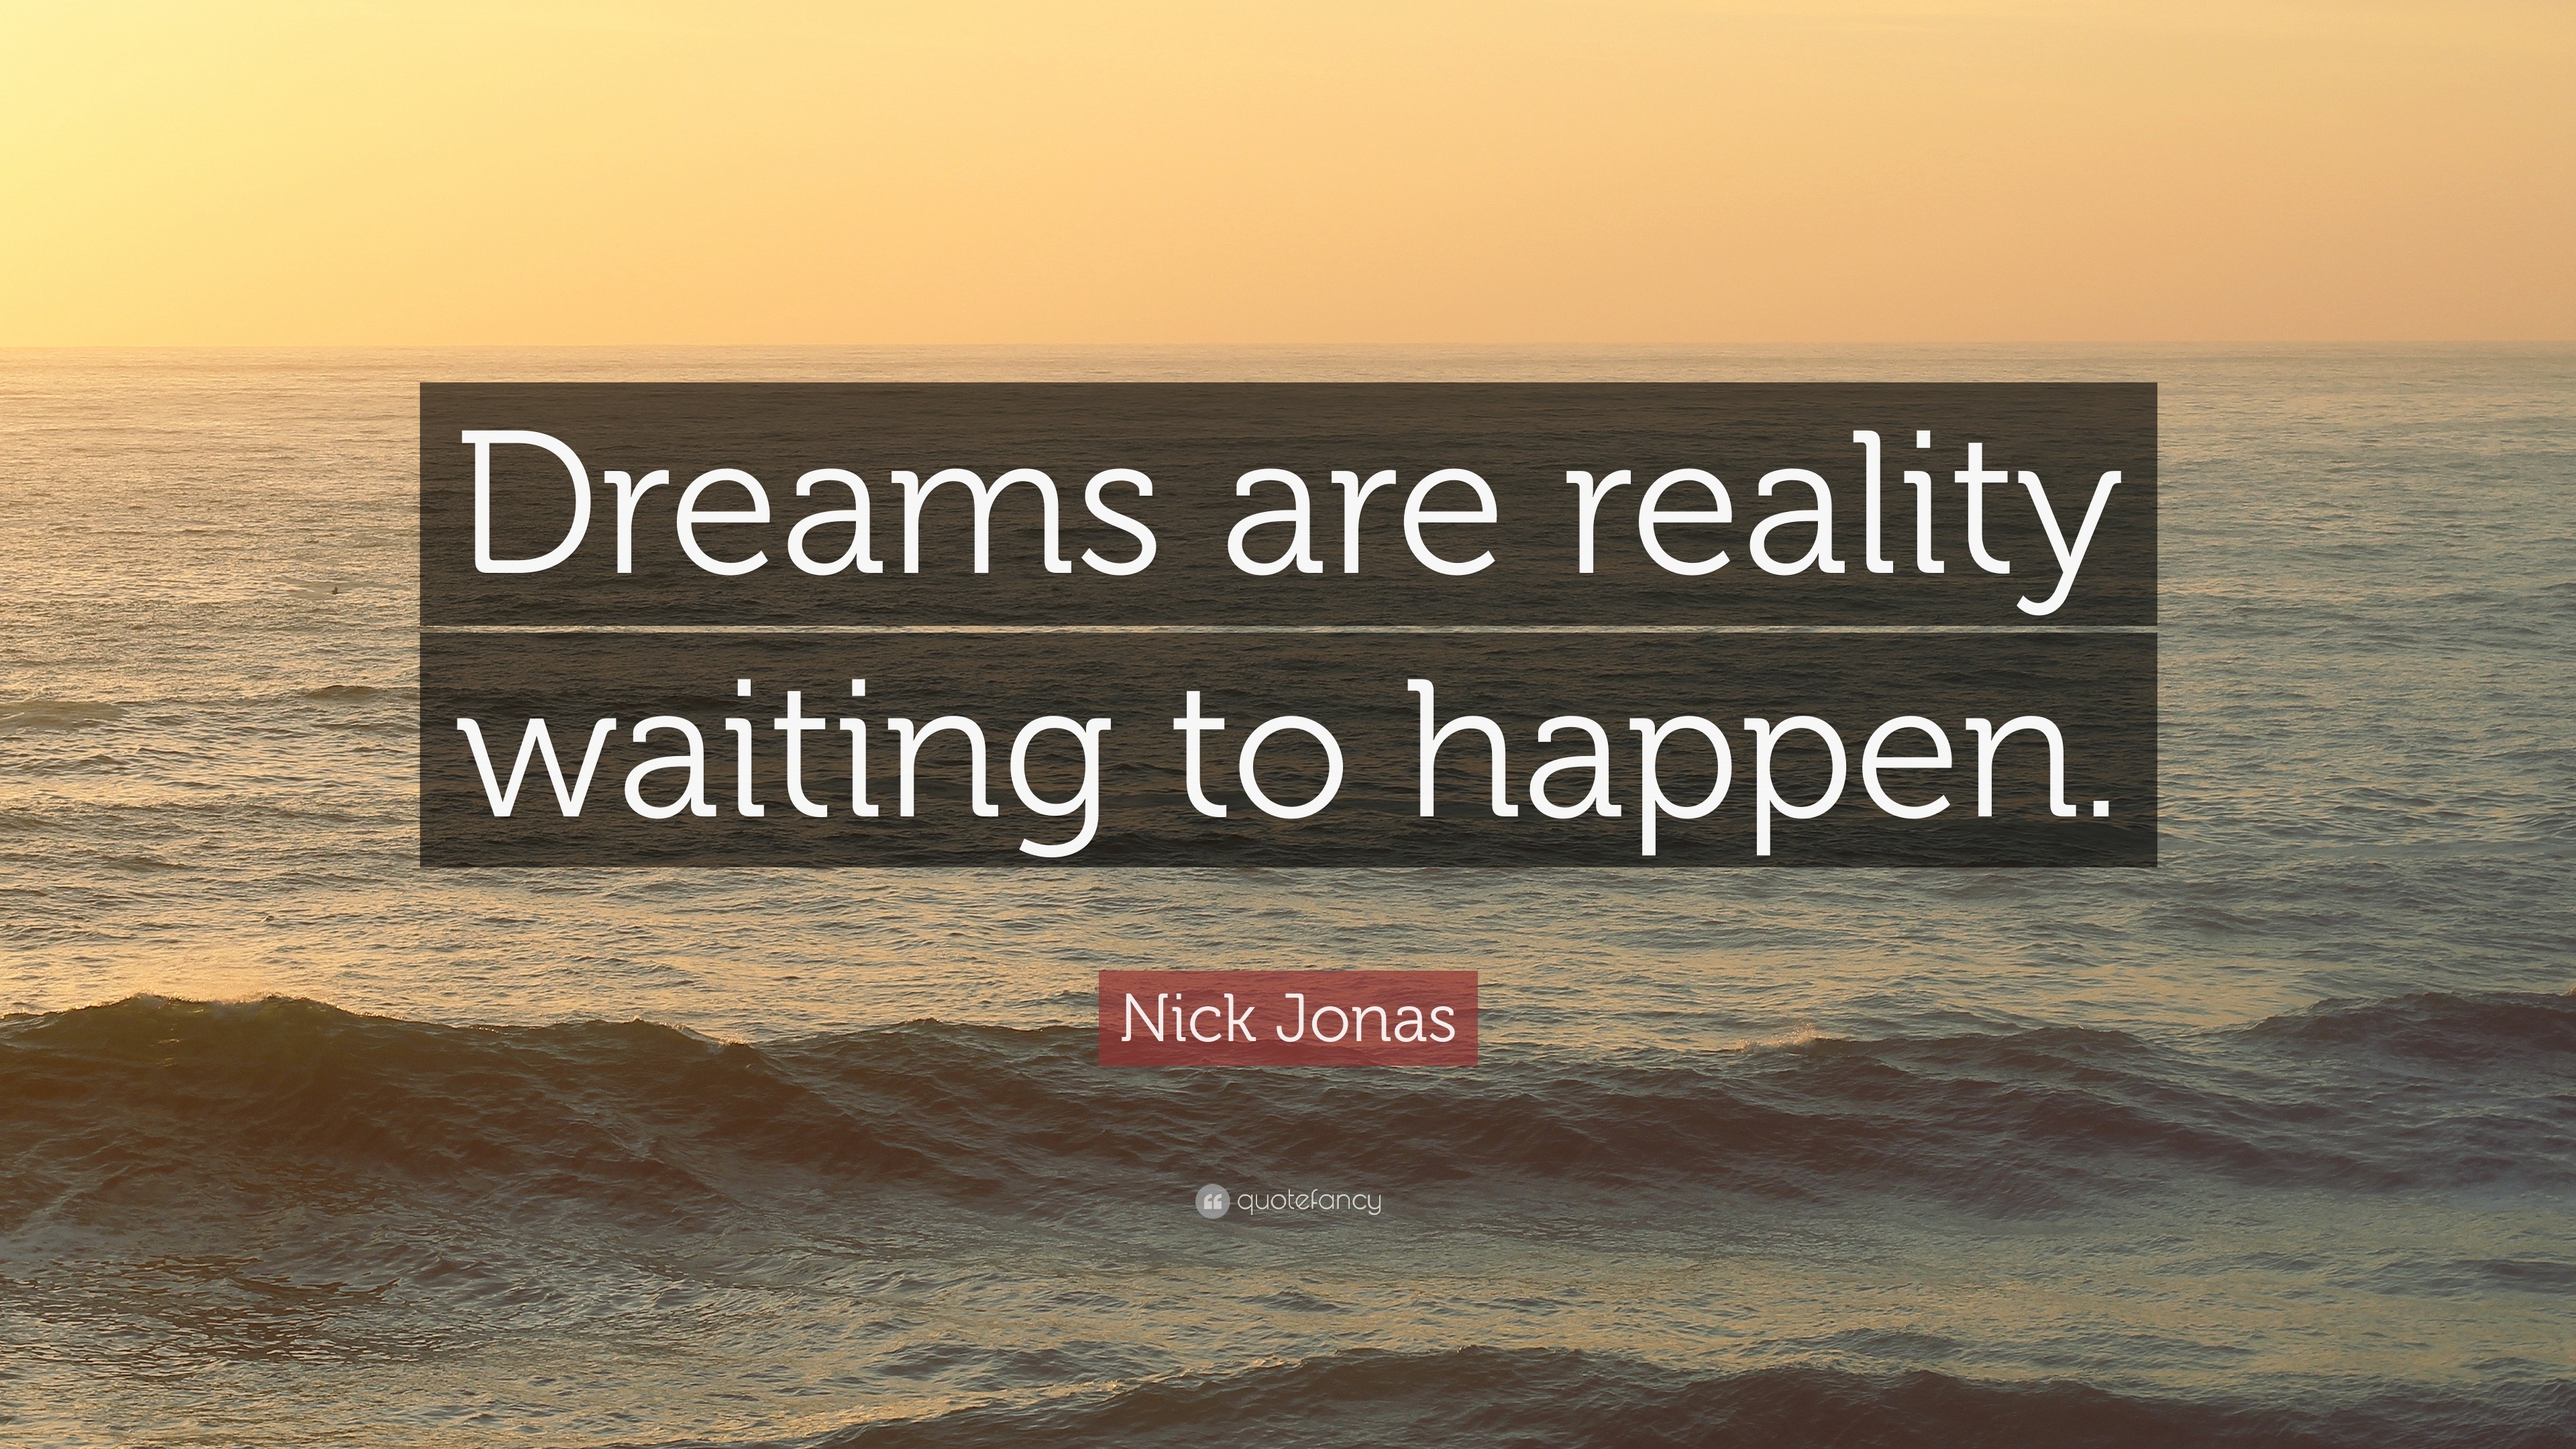 Nick Jonas Inspirational Quotes